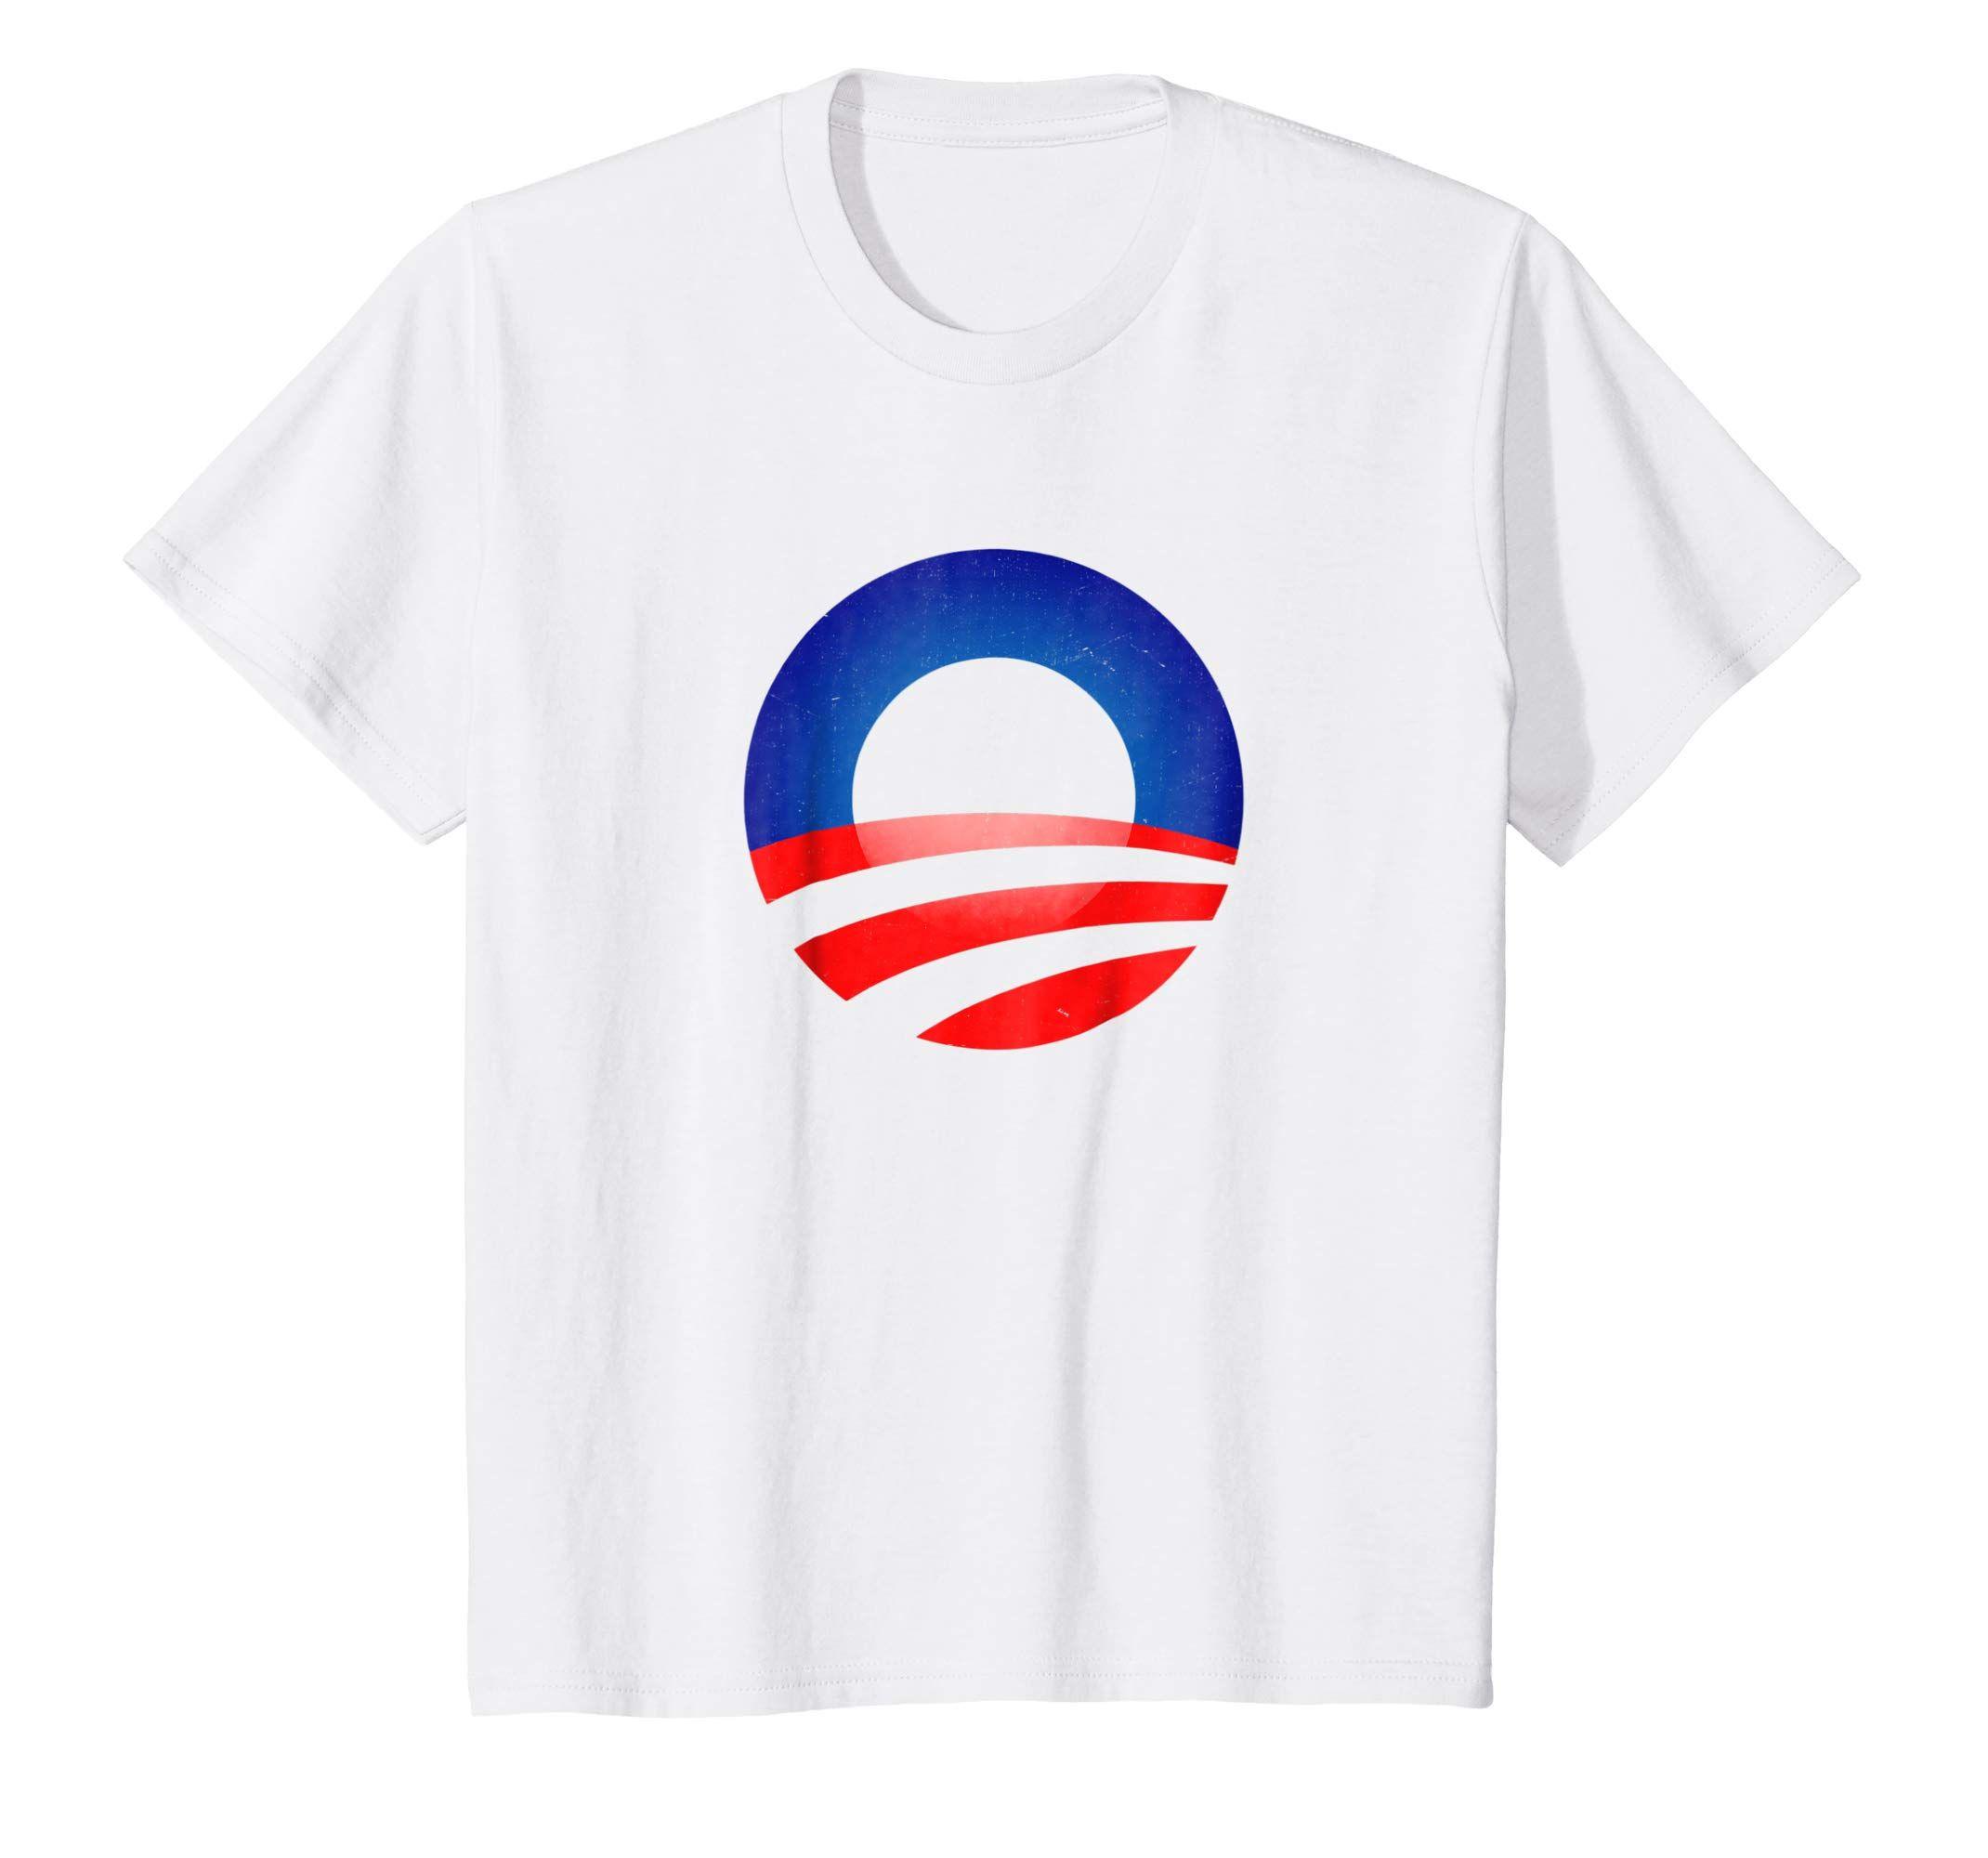 Obama Logo - Amazon.com: Obama Logo Shirt - Obama Biden 08 Retro Campaign Shirt ...